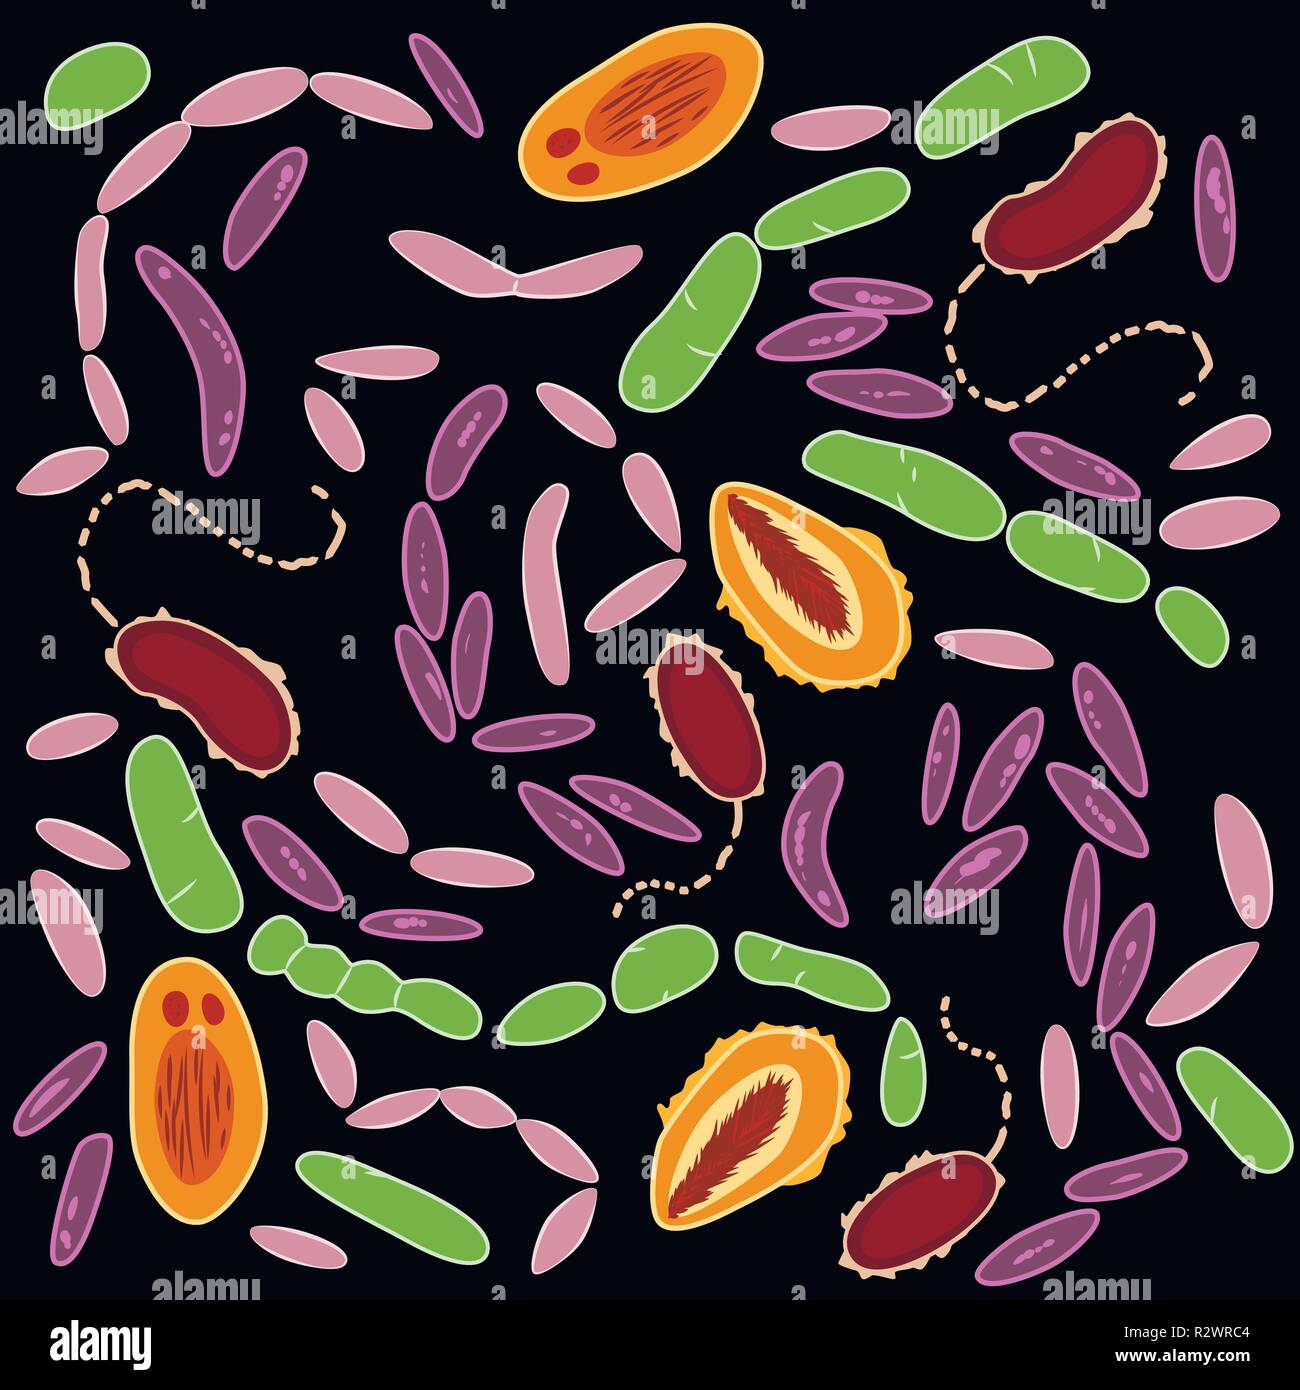 Ensemble de différents types de bactéries du microbiome humain sur fond noir, vector Illustration de Vecteur